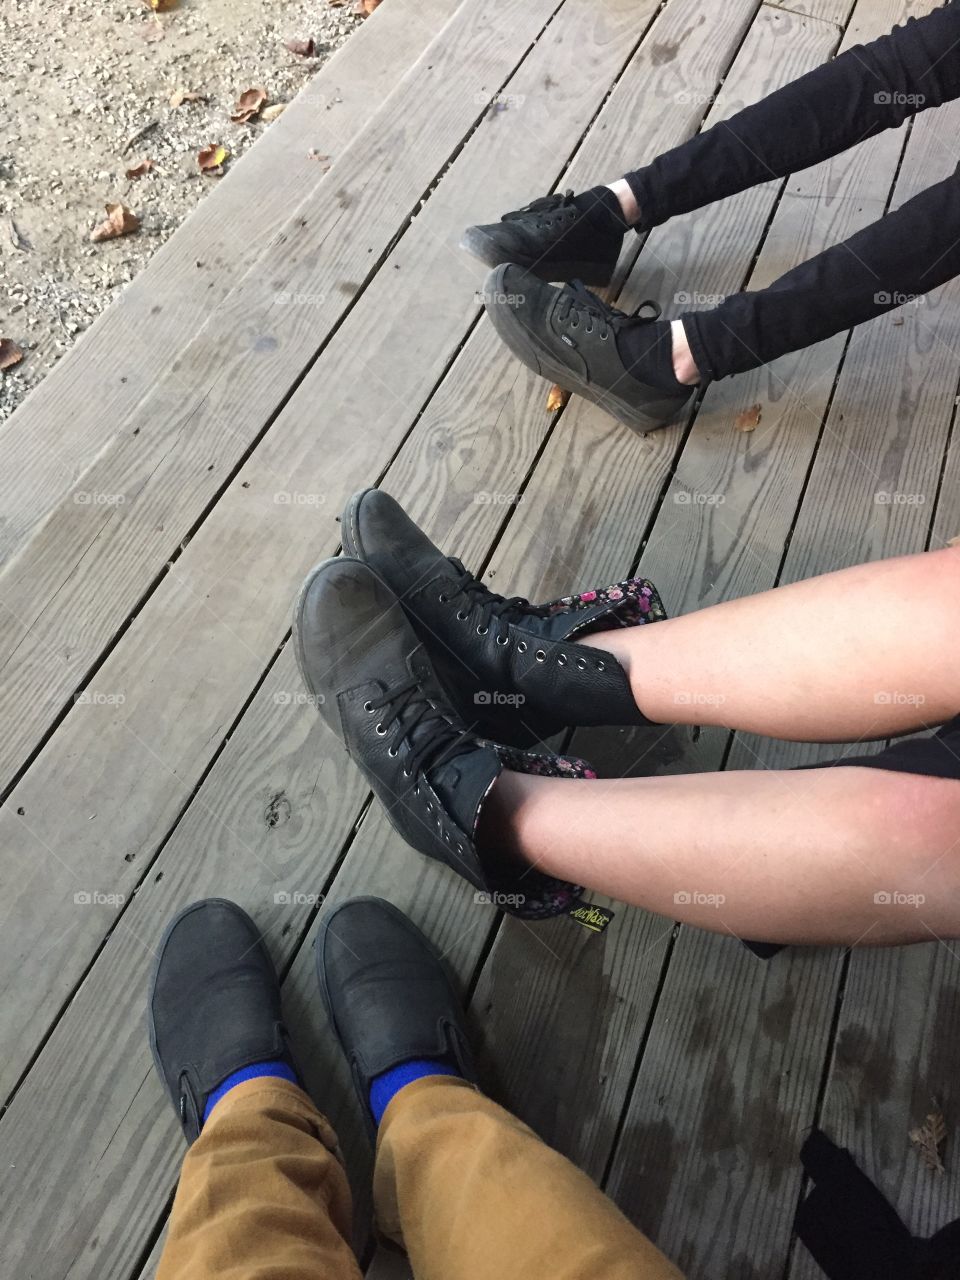 Feets of Renn Fest